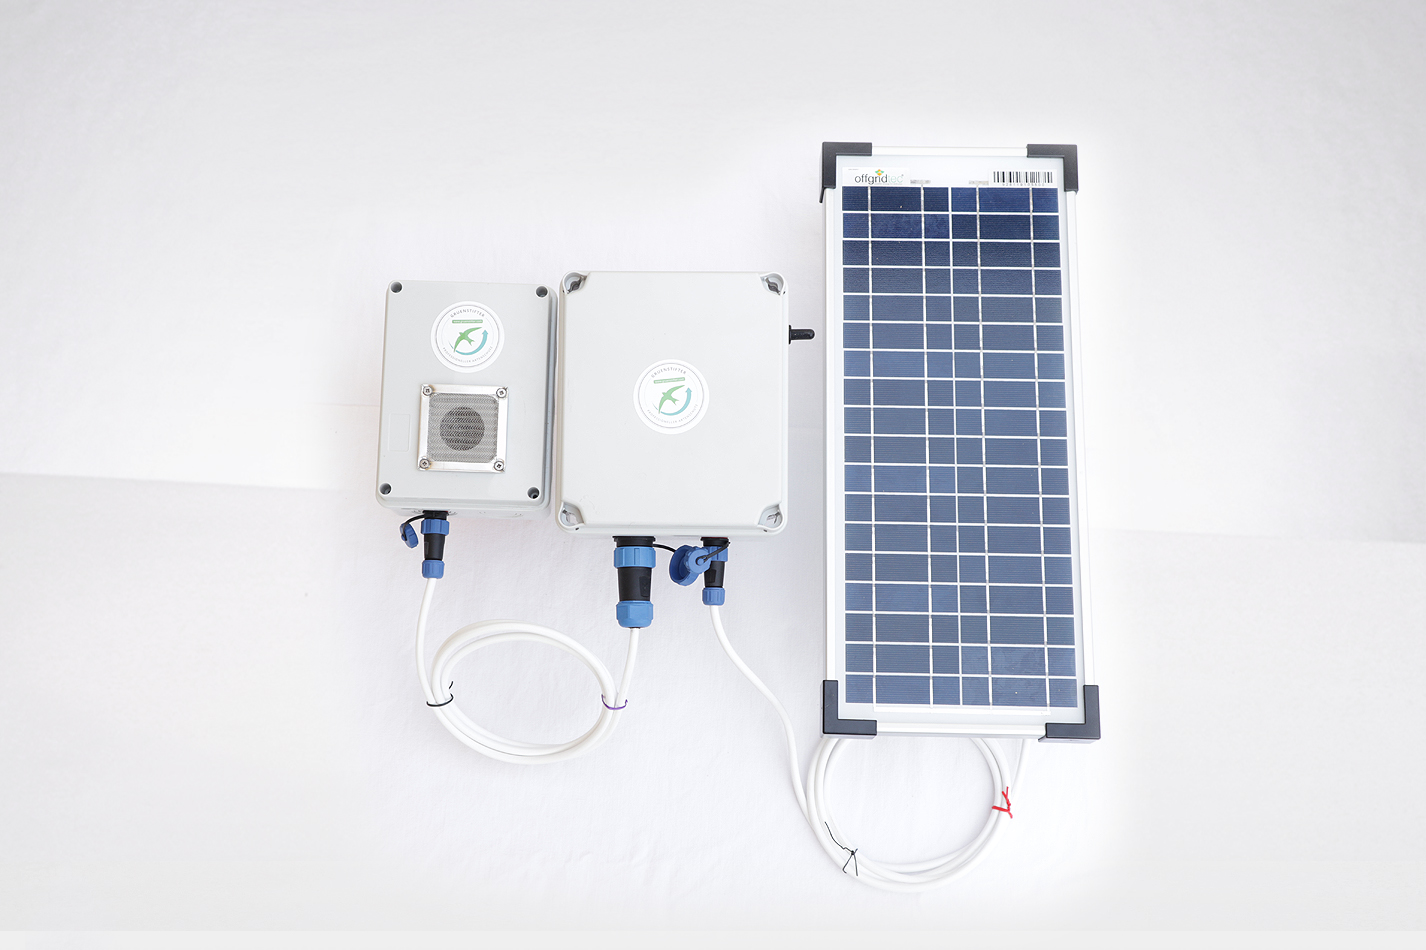 Unsere Vision wurde Wirklichkeit: Eine Solarbetriebene Klangattrappe zum automatischen A